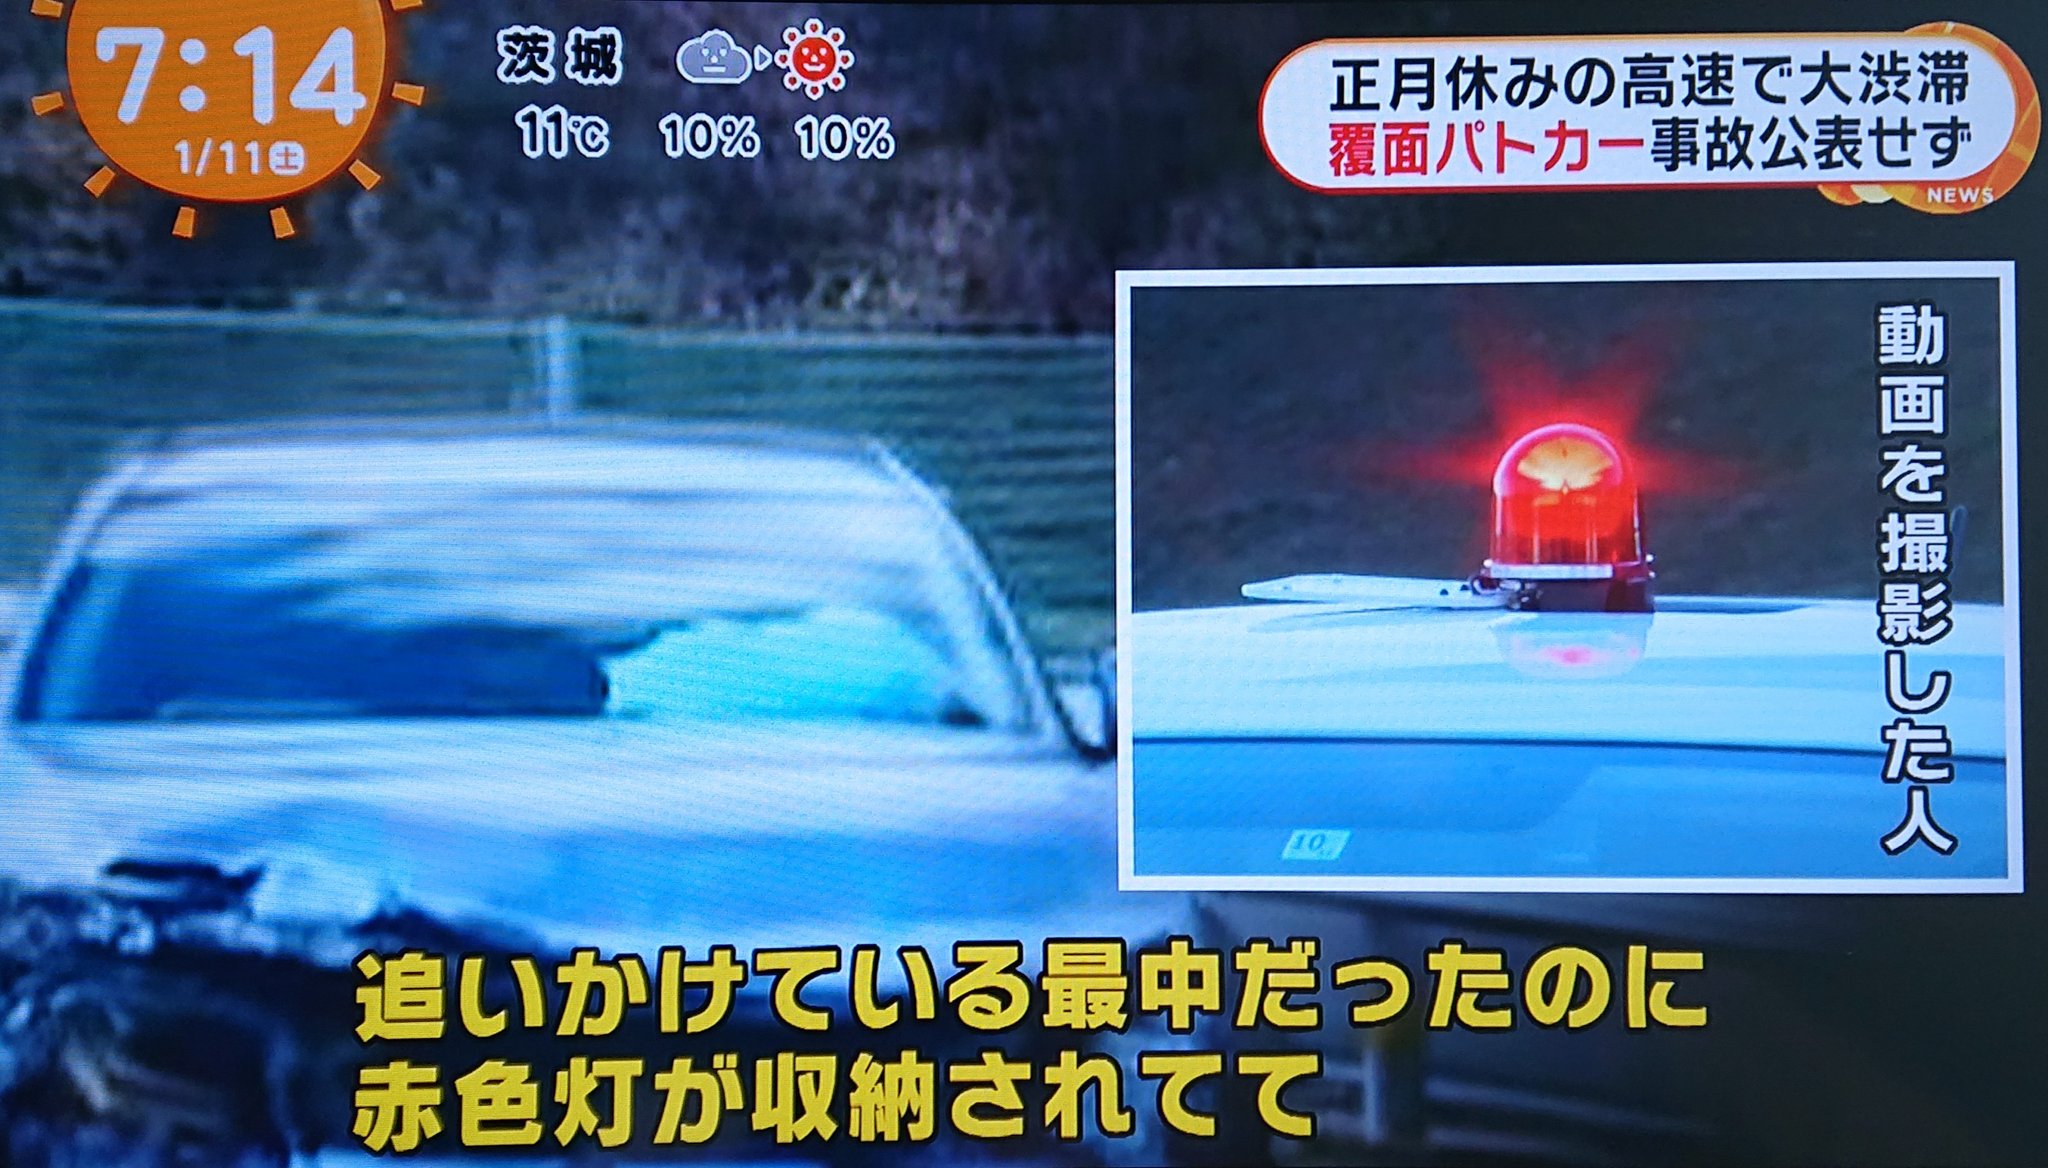 تويتر ぜび على تويتر 1 月 5 日に岐阜県警高速隊が覆面パトカーで事故って高速道路が 2 時間渋滞したけど隠蔽 クソが T Co Ghhk7milaf